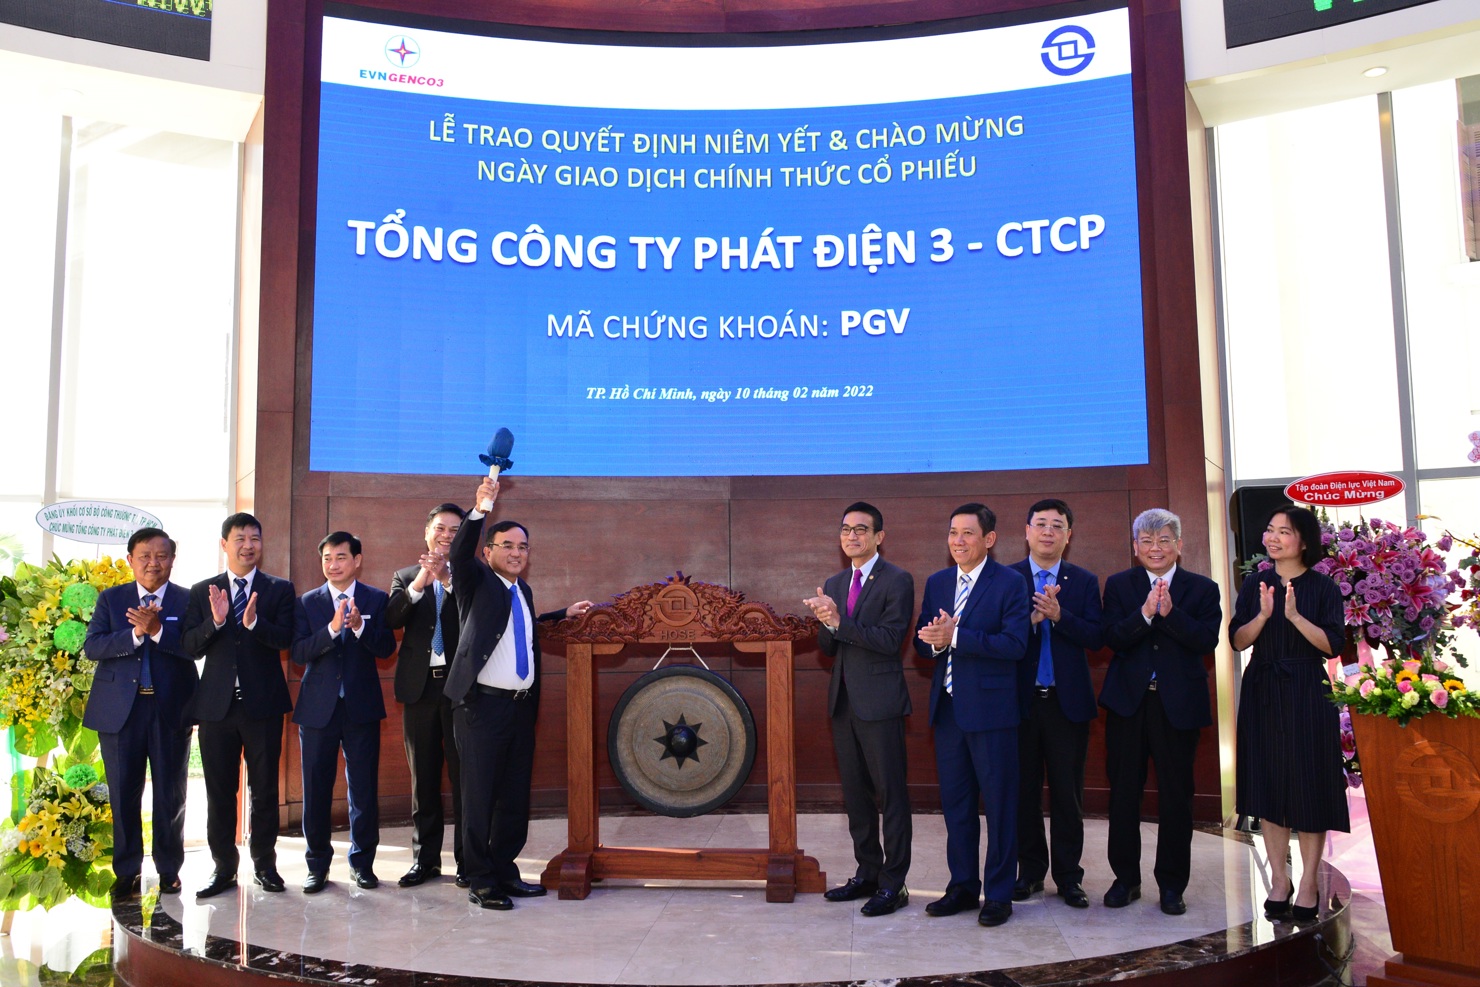 Lễ trao quyết định niêm yết và đưa cổ phiếu PGV của Tổng Công ty Phát điện 3 - CTCP vào giao dịch.